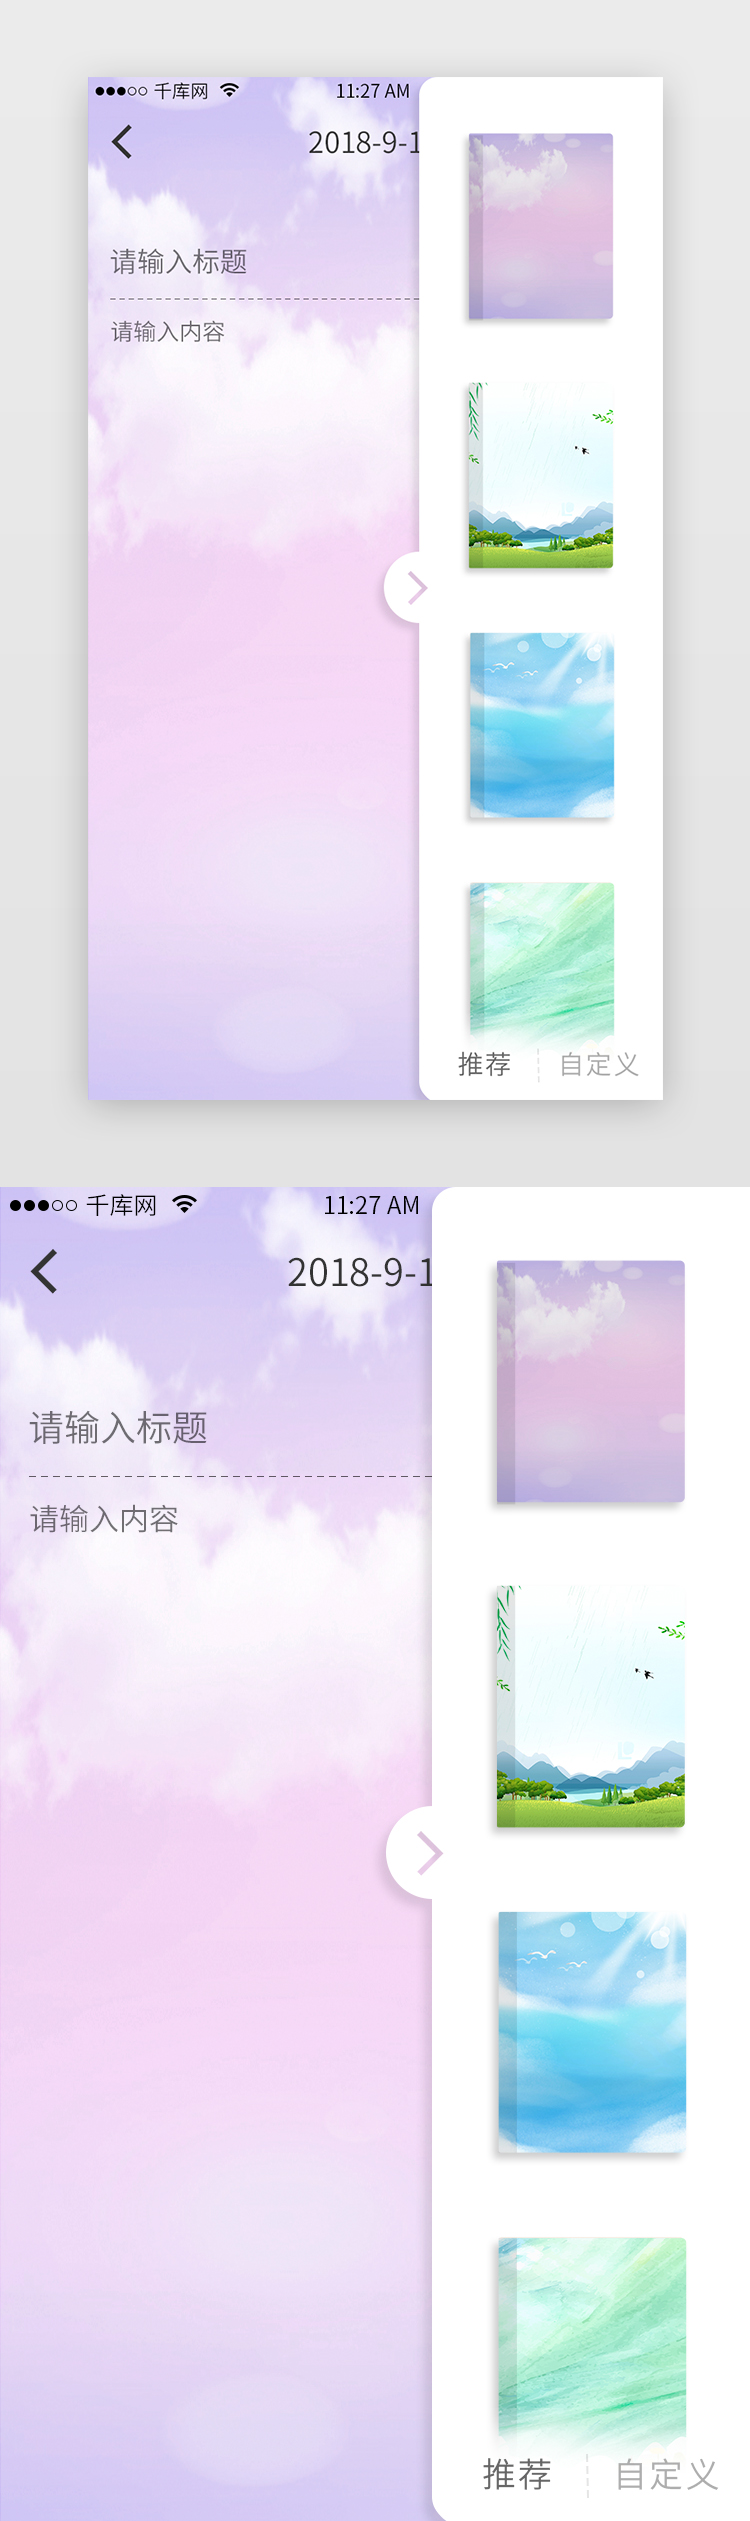 紫色简洁笔记电商app主界面图片